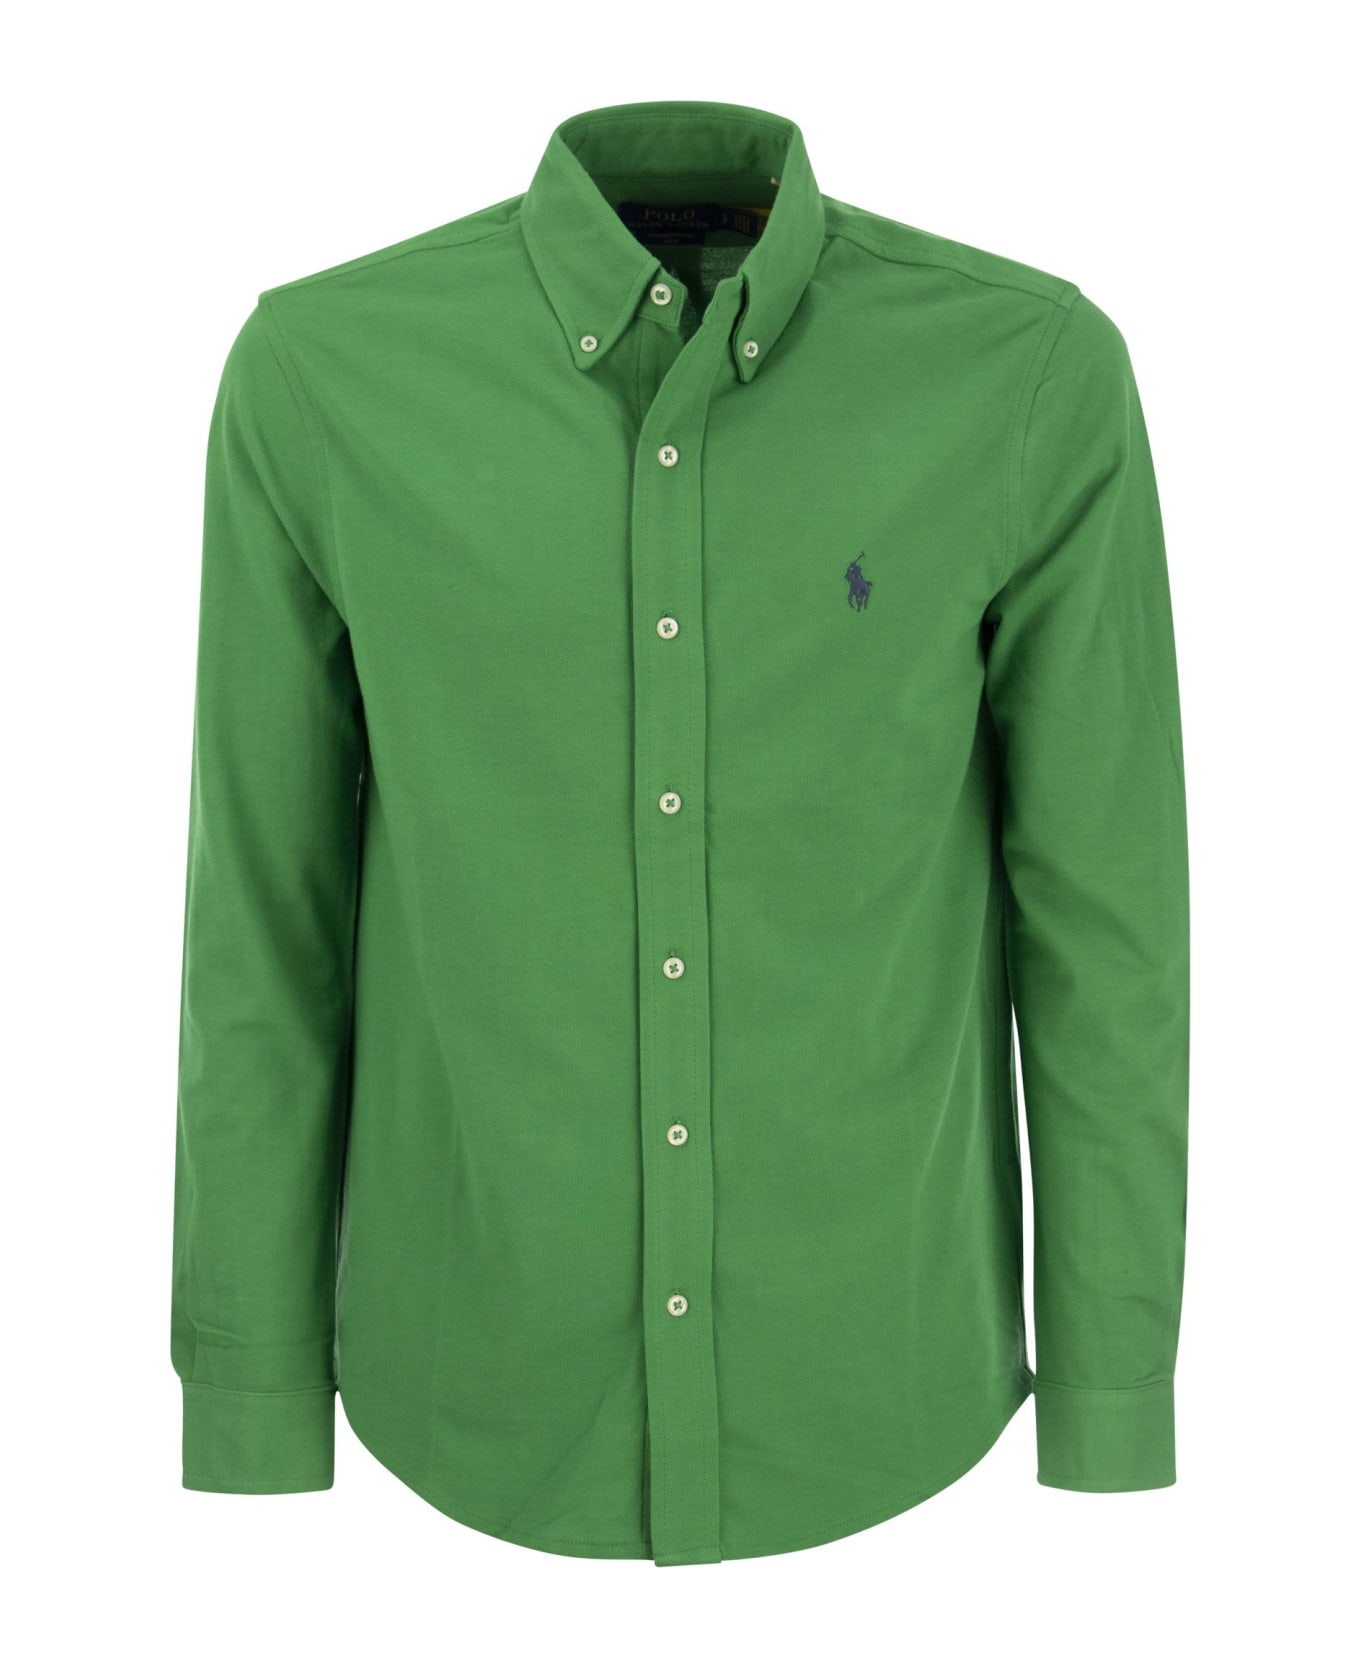 Polo Ralph Lauren Ultralight Pique Shirt - Green